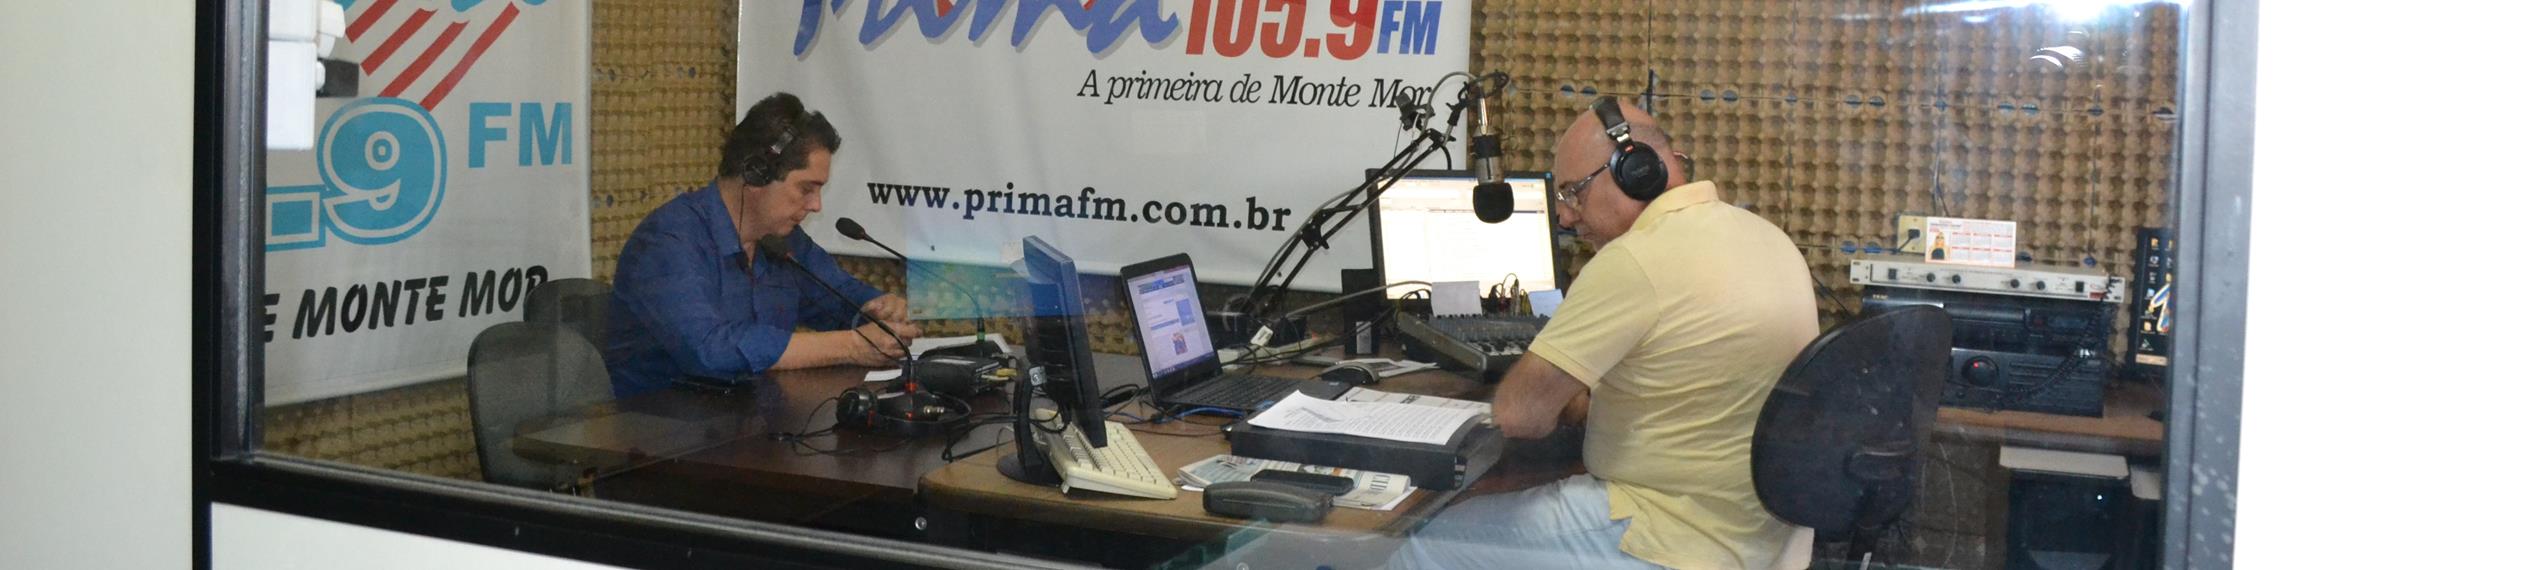 O presidente Waltinho Assis – à esquerda, de camisa azul – sendo entrevistado pelo jornalista Rage, na Rádio Prima